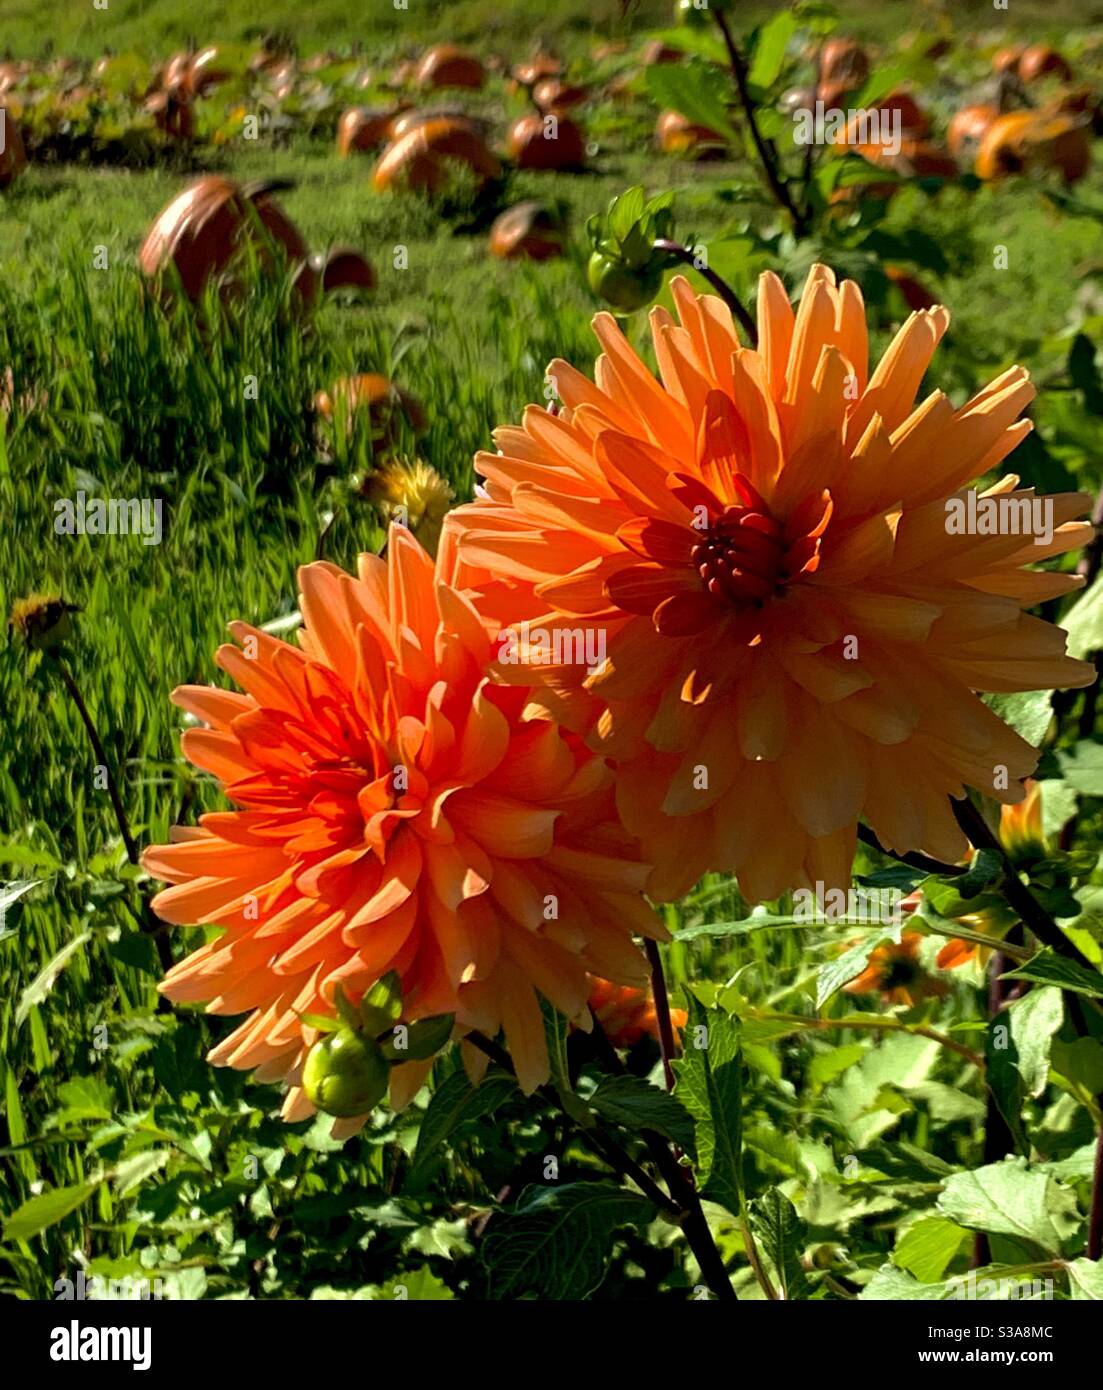 Während wir von Sommer zu Herbst übergehen, finden wir ein Kürbisfeld, das mit schönen orangefarbenen Dahlien gesäumt ist. Stockfoto